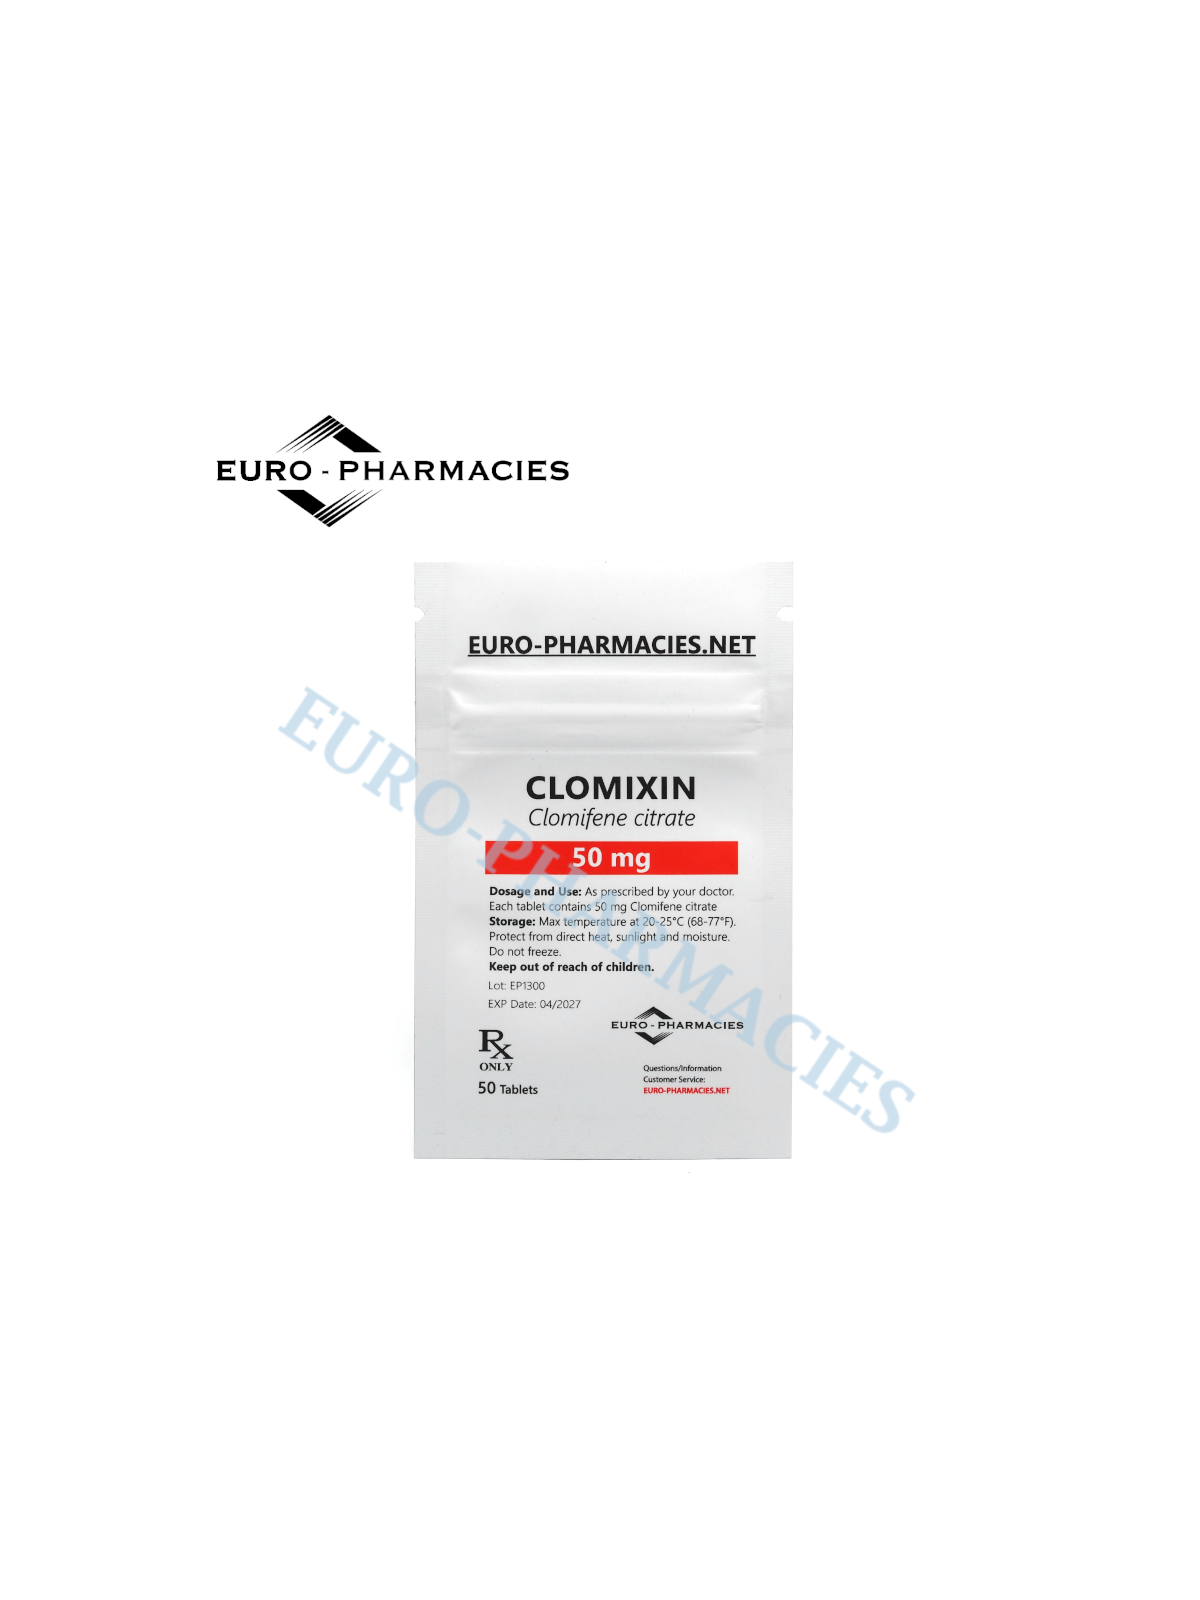 Clomixin (Clomid) - 50mg/tab, 50 pills/bag - Euro-Pharmacies